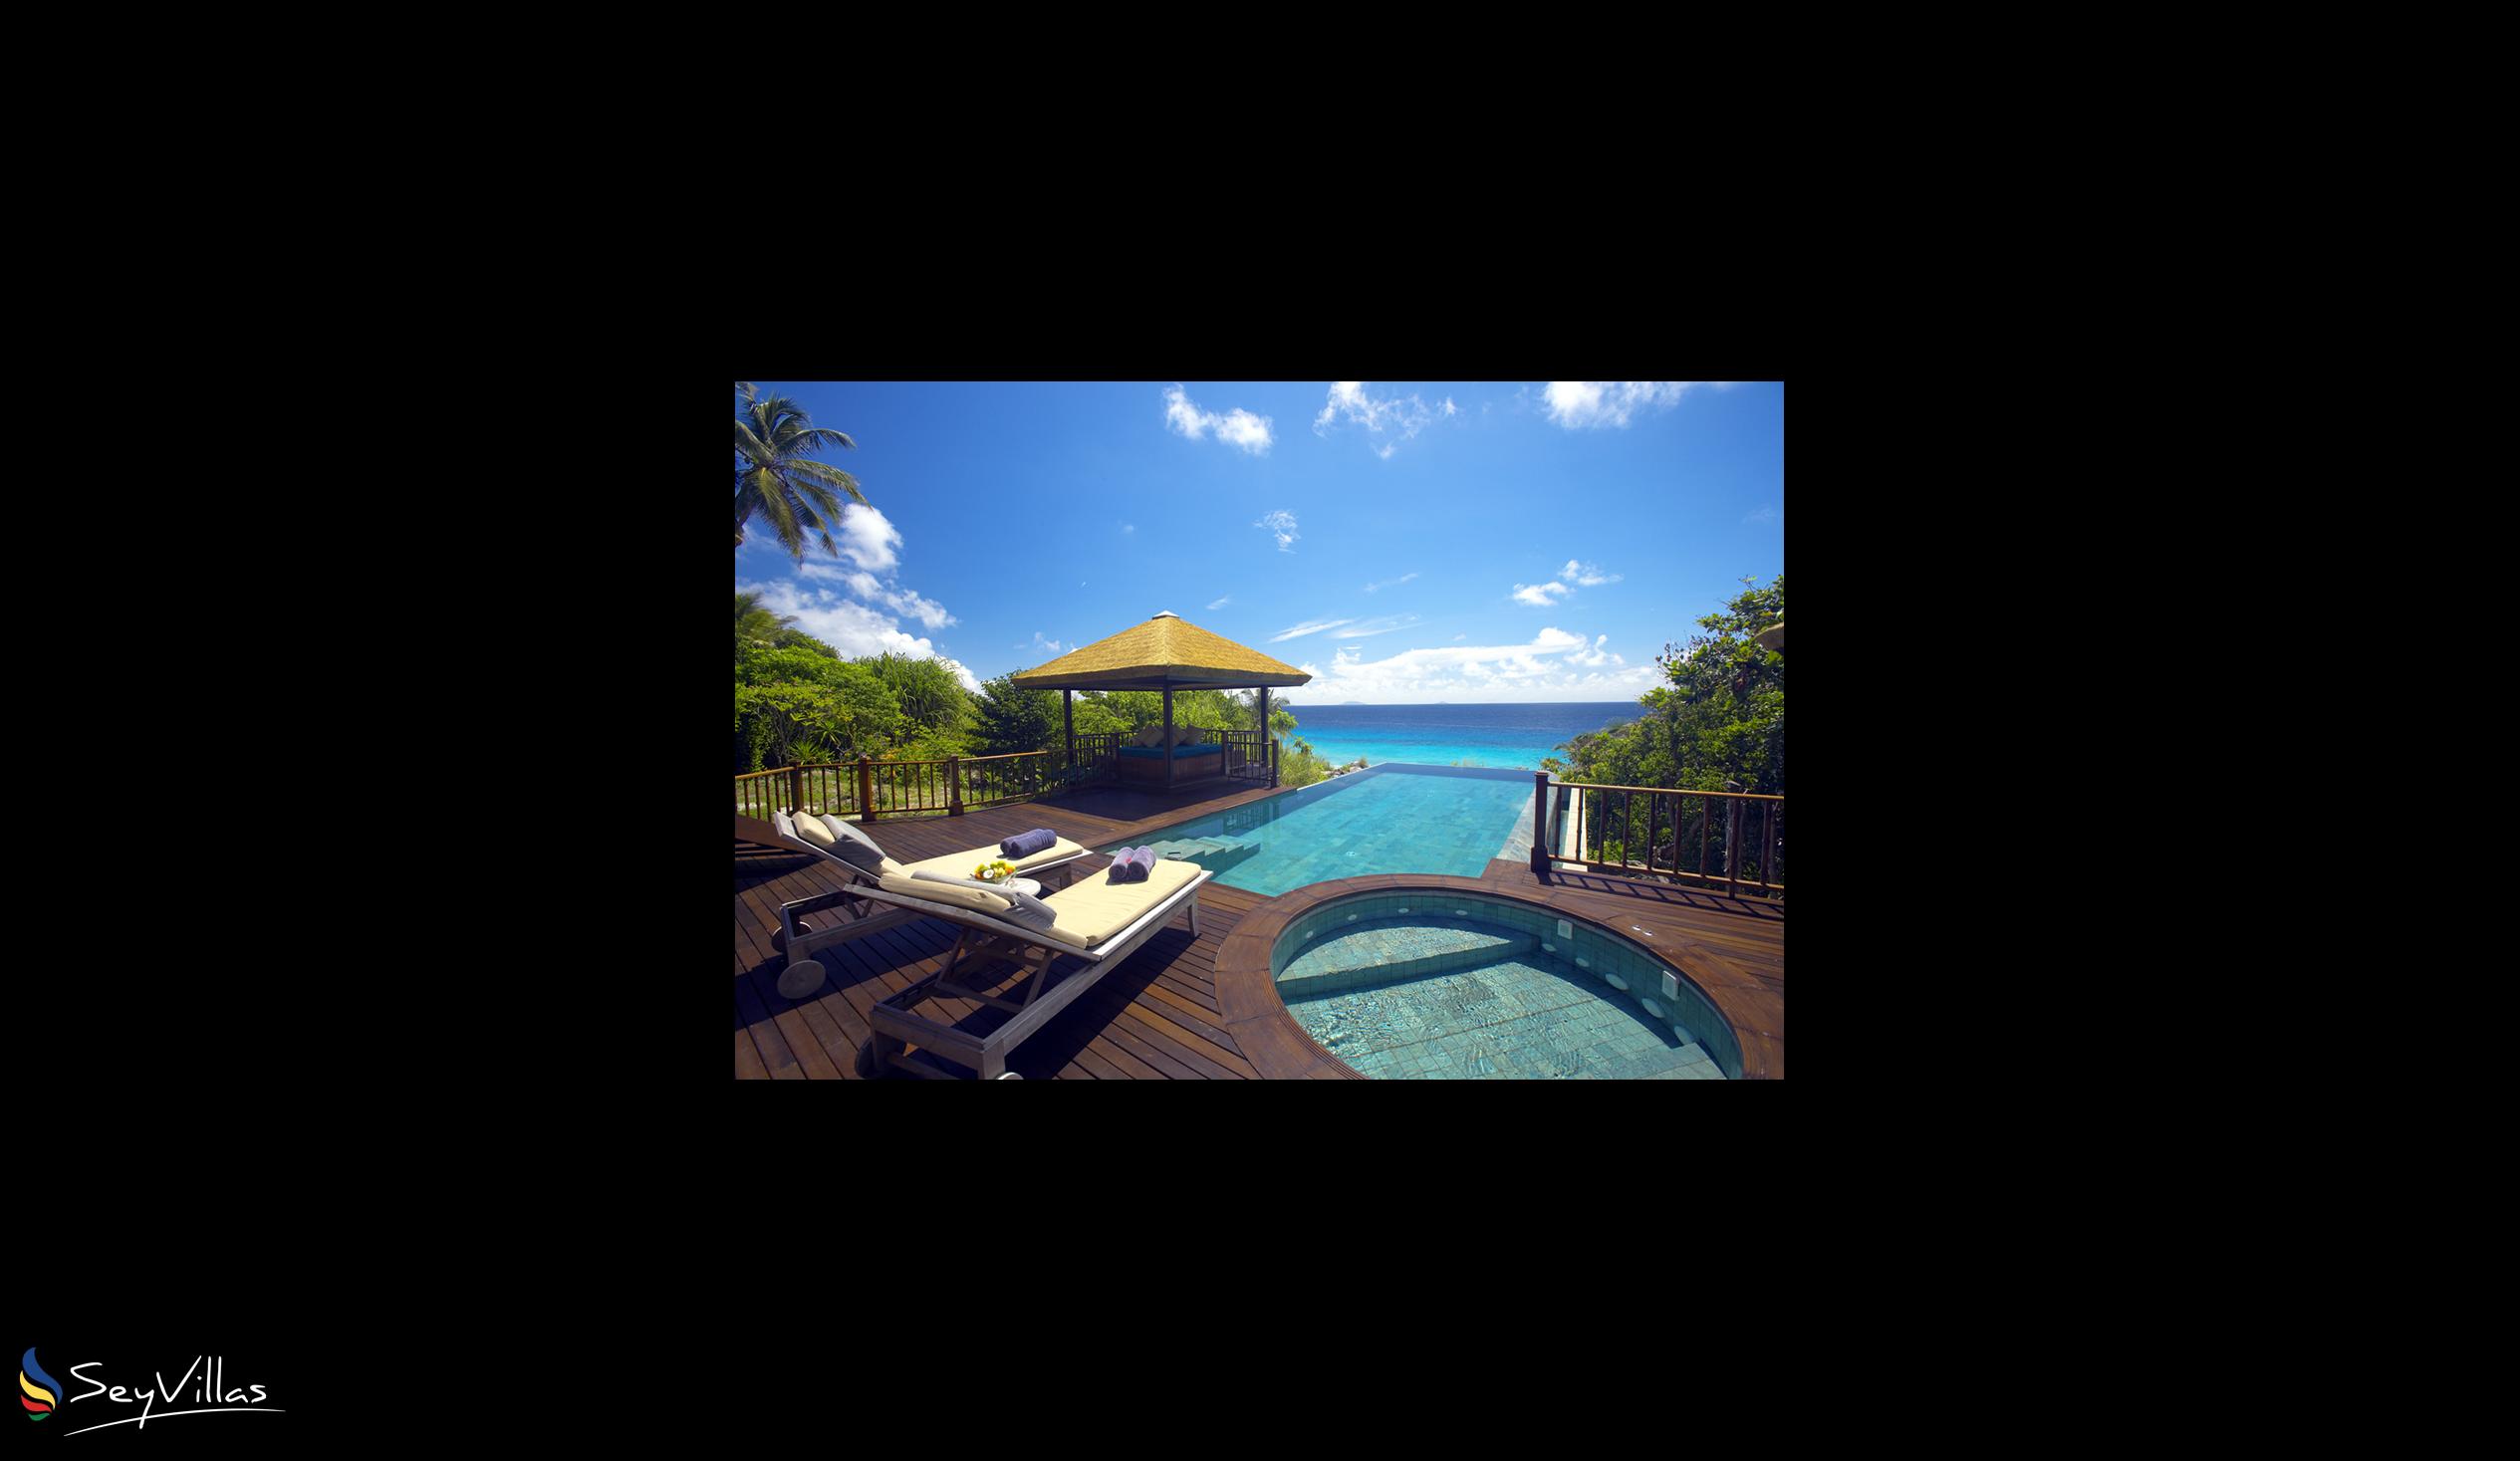 Foto 48: Fregate Island Private - Villa con piscina privata - Fregate Island (Seychelles)